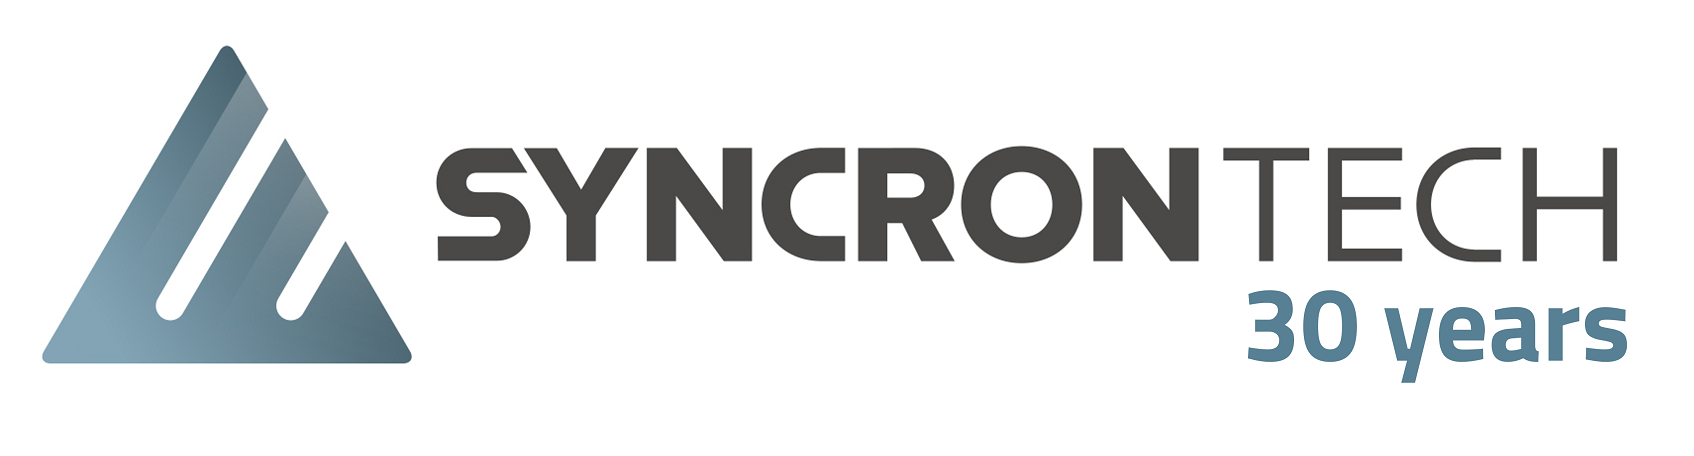 Syncron_Tech_logo_30yrs_bold_1694x456